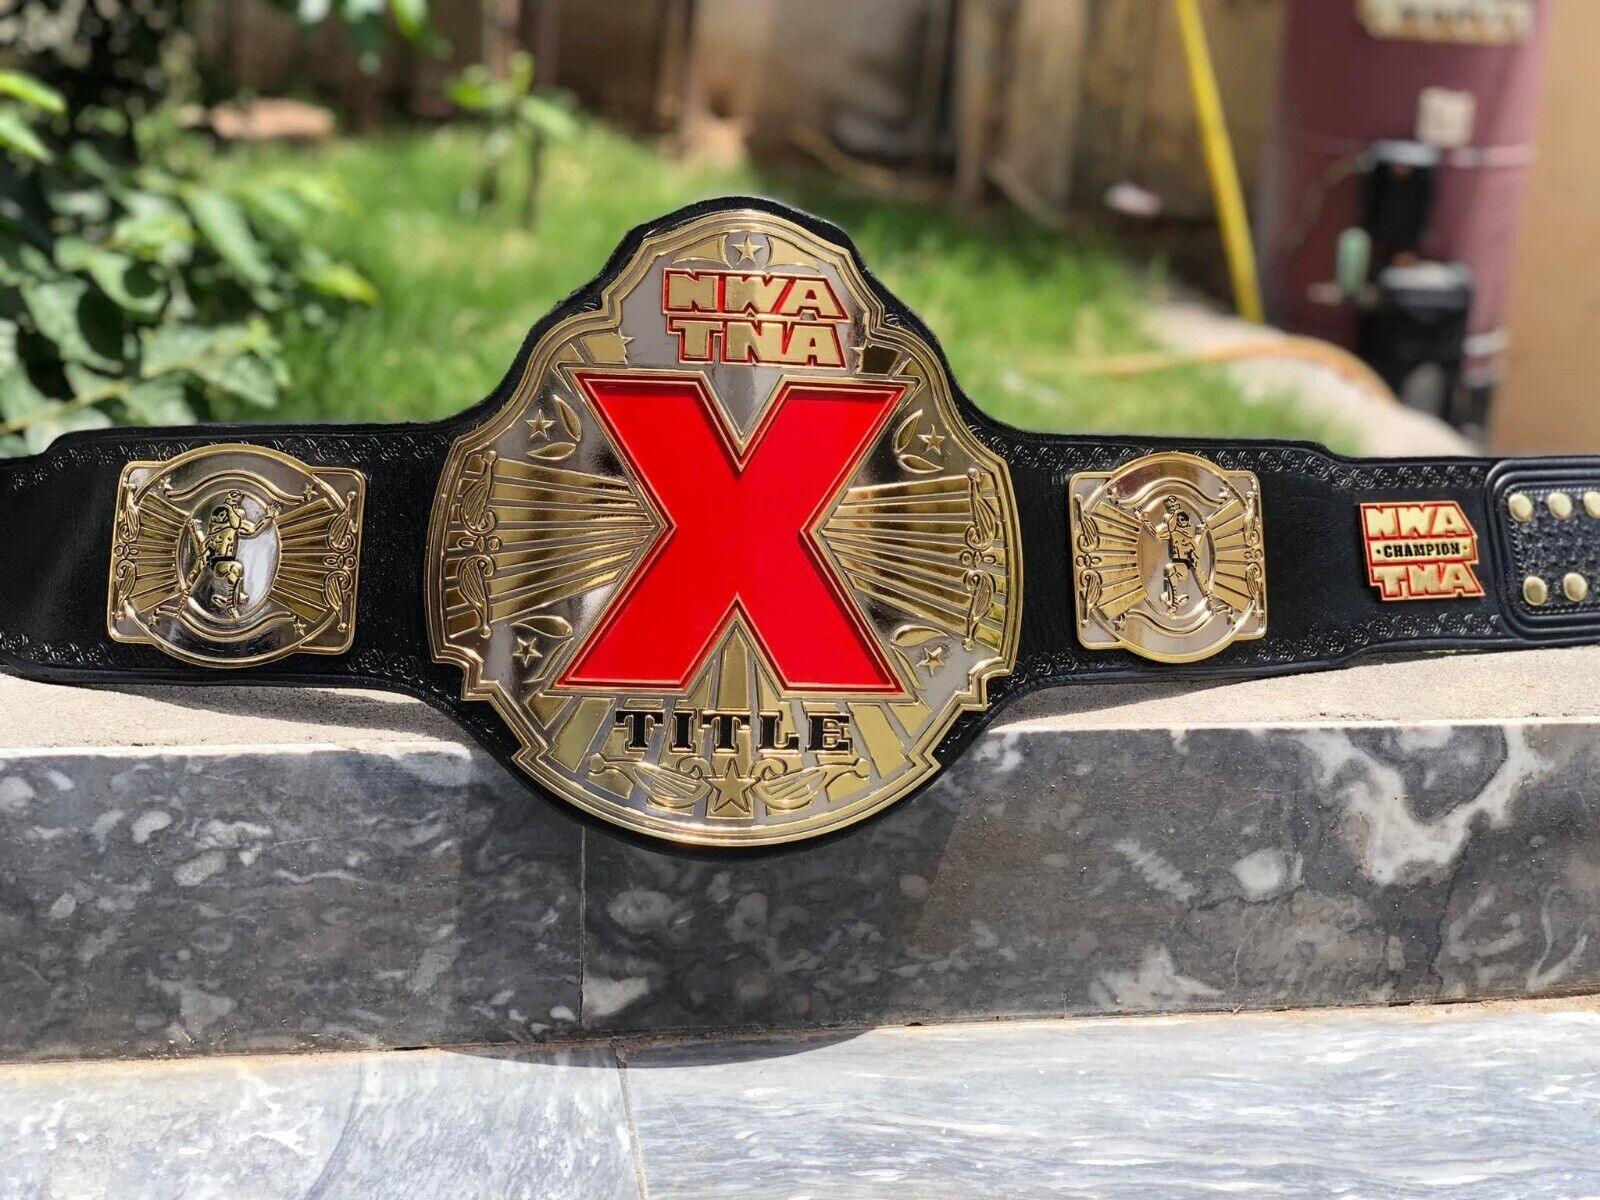 NWA TNA X CNC MADE CHAMPIONSHIP BELT - Zees Belts